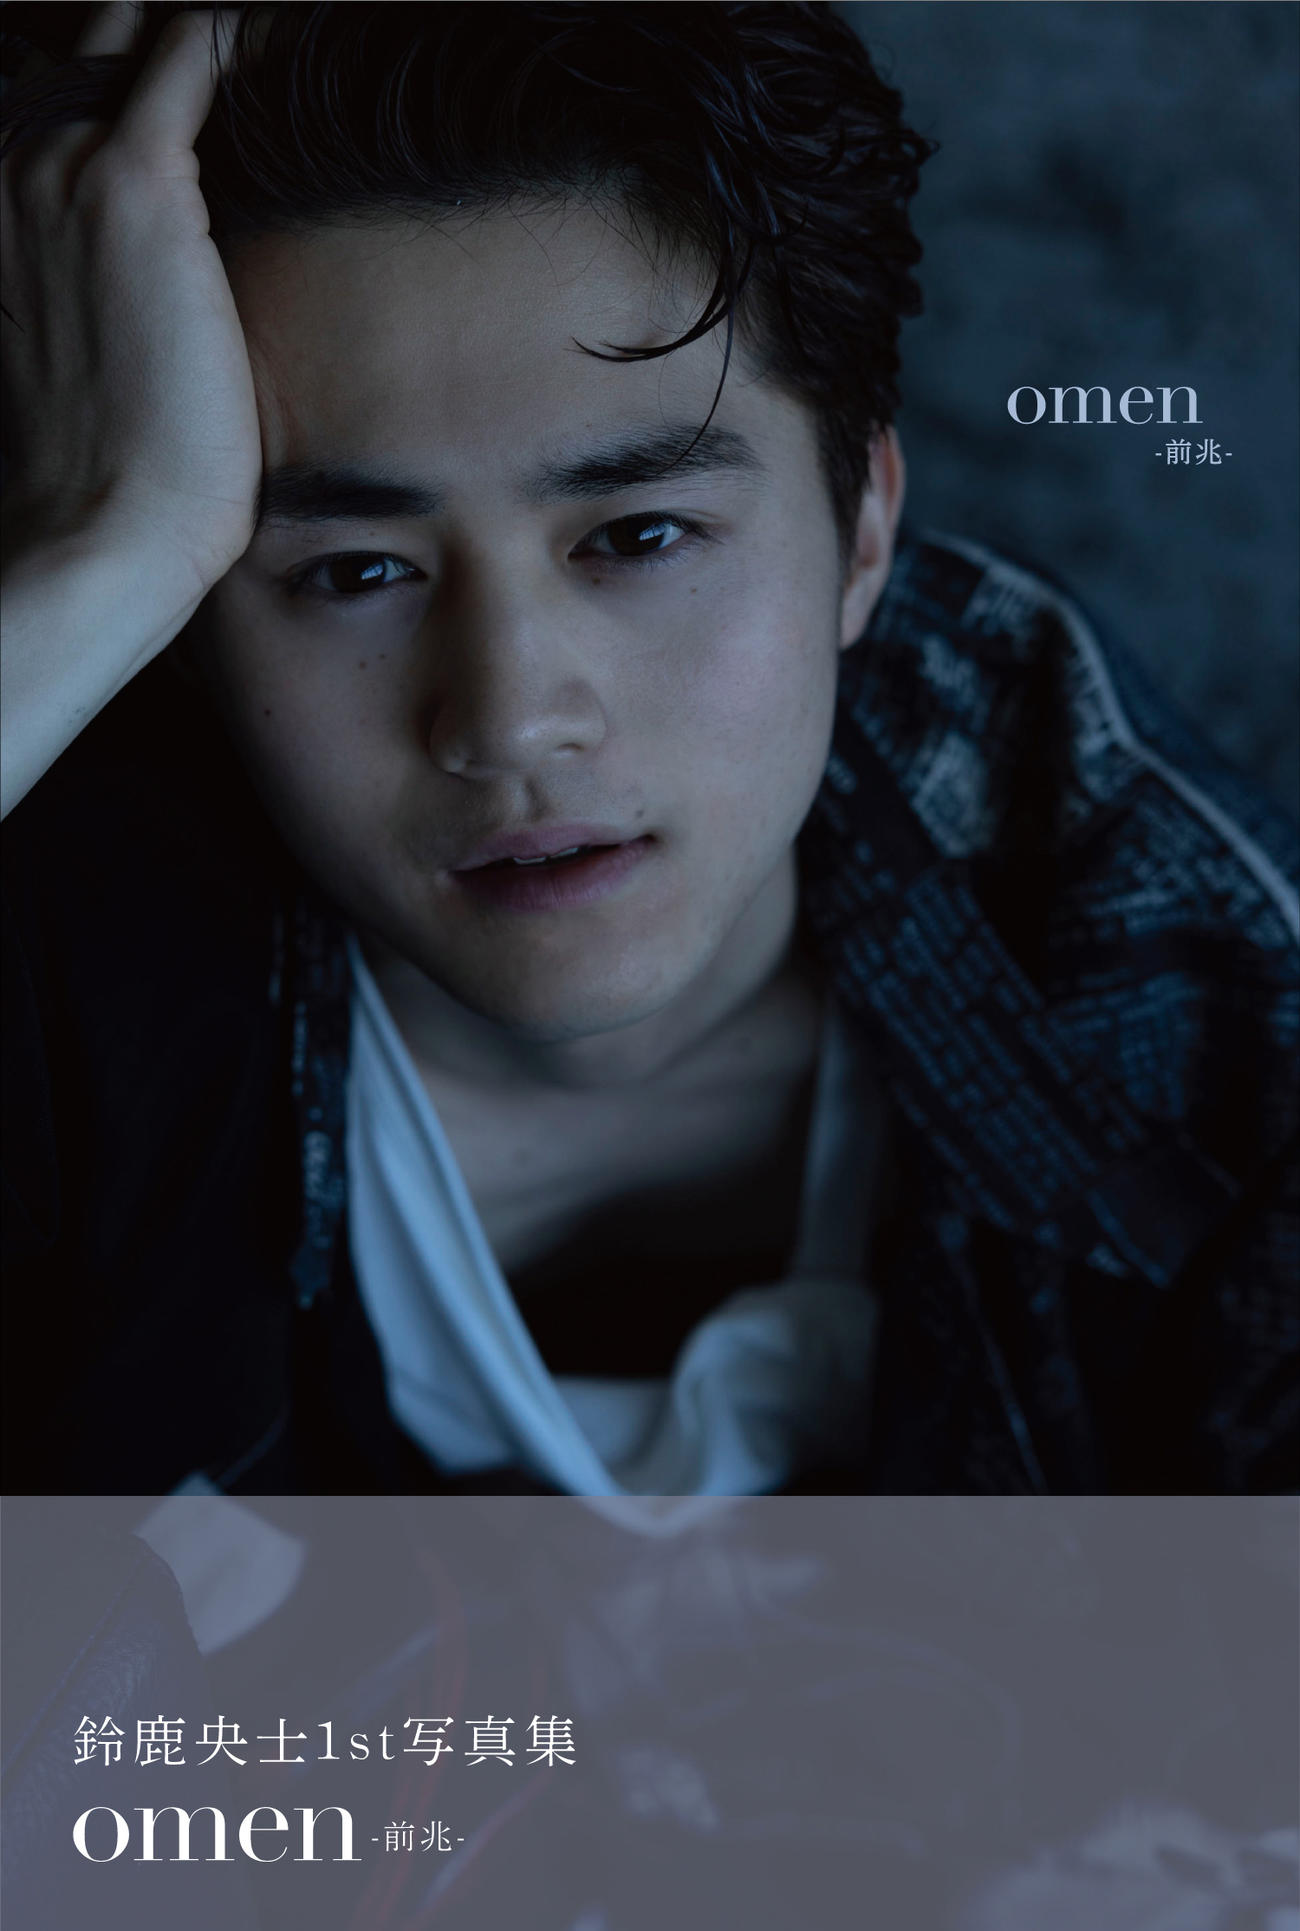 鈴鹿央士が12月14日に発売する写真集「omen－前兆－」の表紙